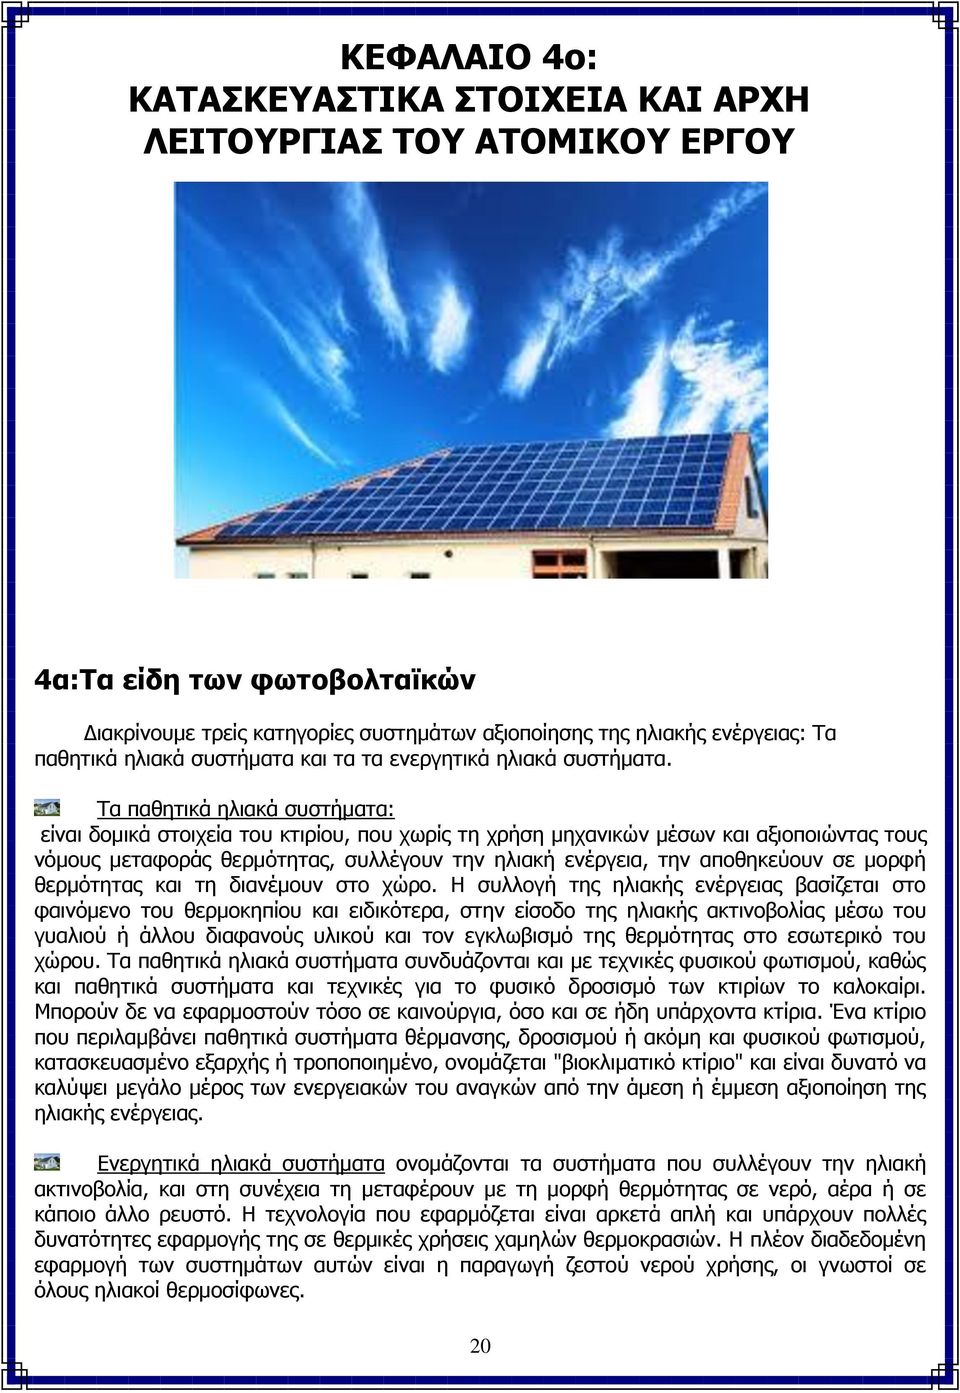 Τα παθητικά ηλιακά συστήματα: είναι δομικά στοιχεία του κτιρίου, που χωρίς τη χρήση μηχανικών μέσων και αξιοποιώντας τους νόμους μεταφοράς θερμότητας, συλλέγουν την ηλιακή ενέργεια, την αποθηκεύουν